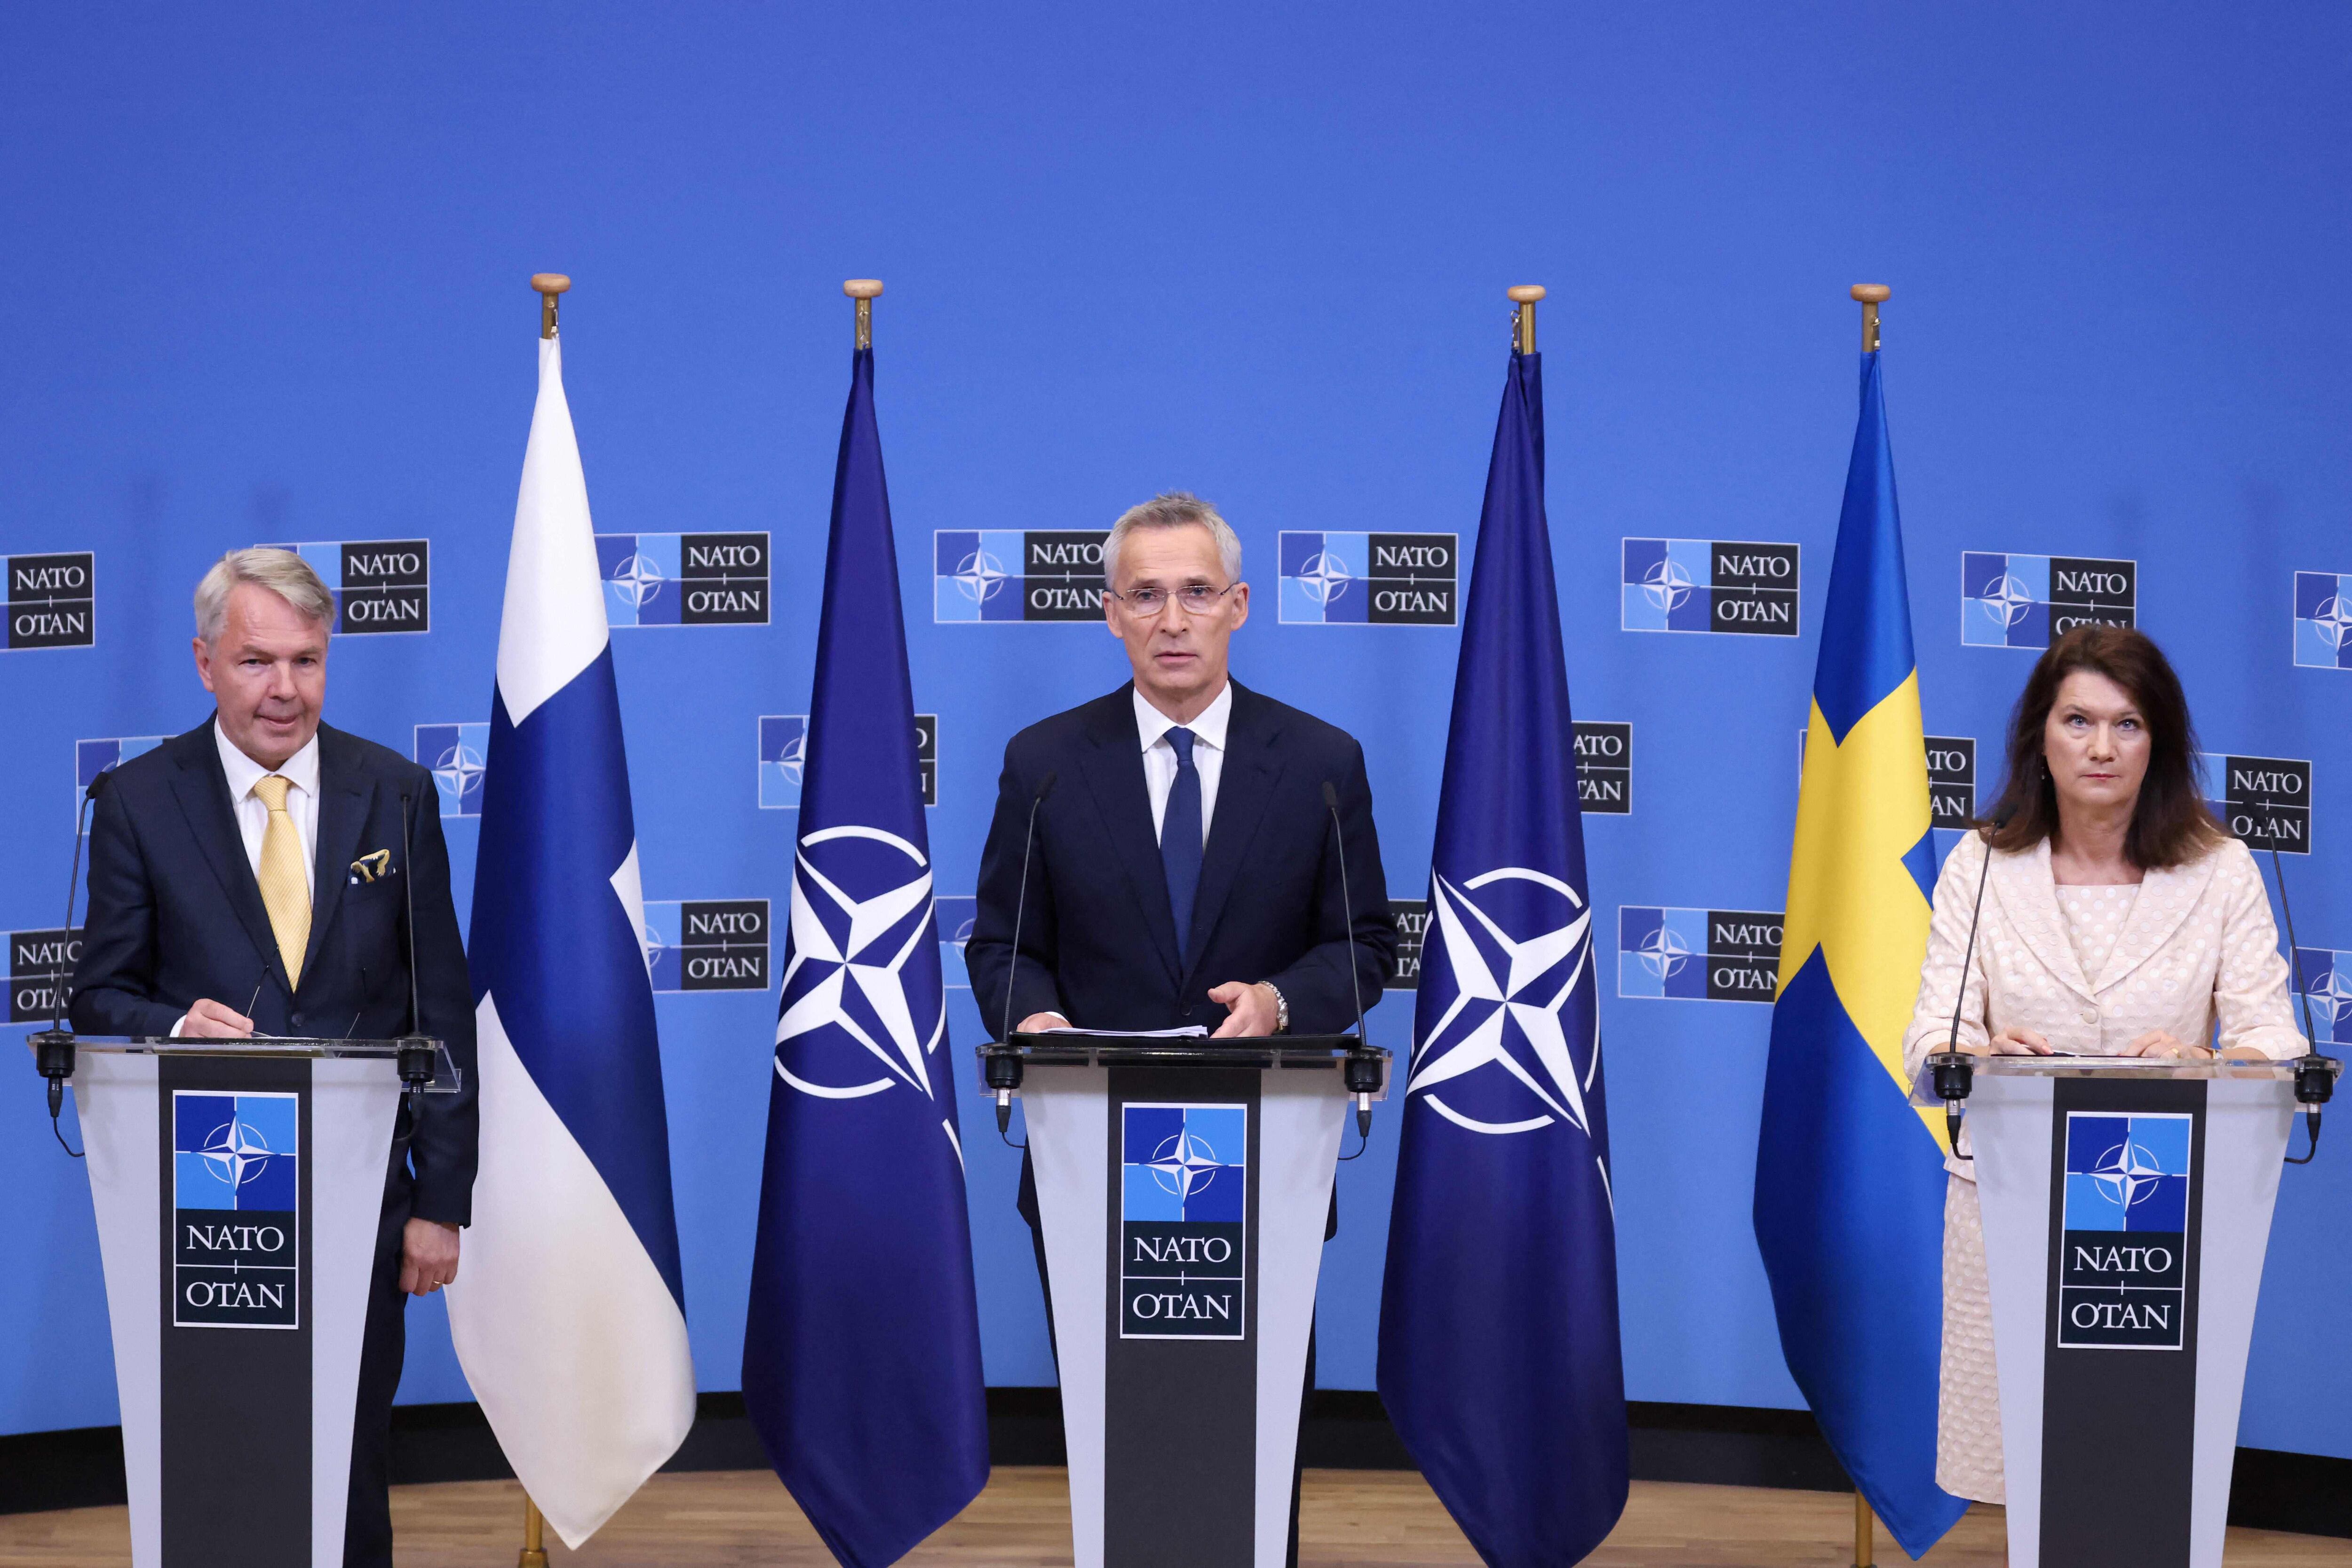 El secretario general de la Organización del Tratado Atlántico Norte Jens Stoltenberg (centro), celebró la entrada de Suecia. (Photo by Kenzo TRIBOUILLARD / AFP)